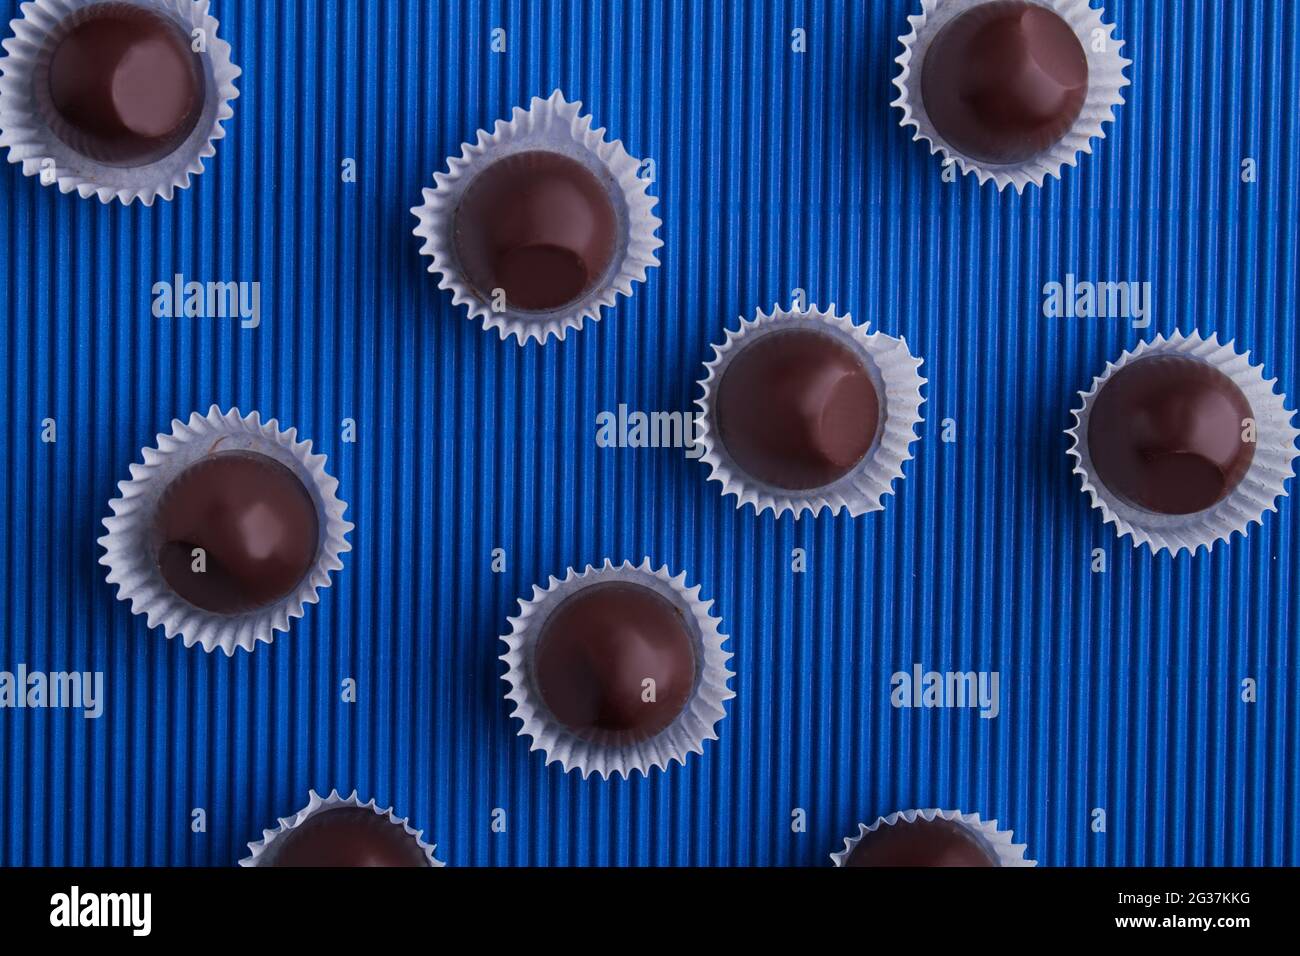 Draufsicht flach lagen runde braune Schokolade Bonbons auf blauem Hintergrund. Stockfoto